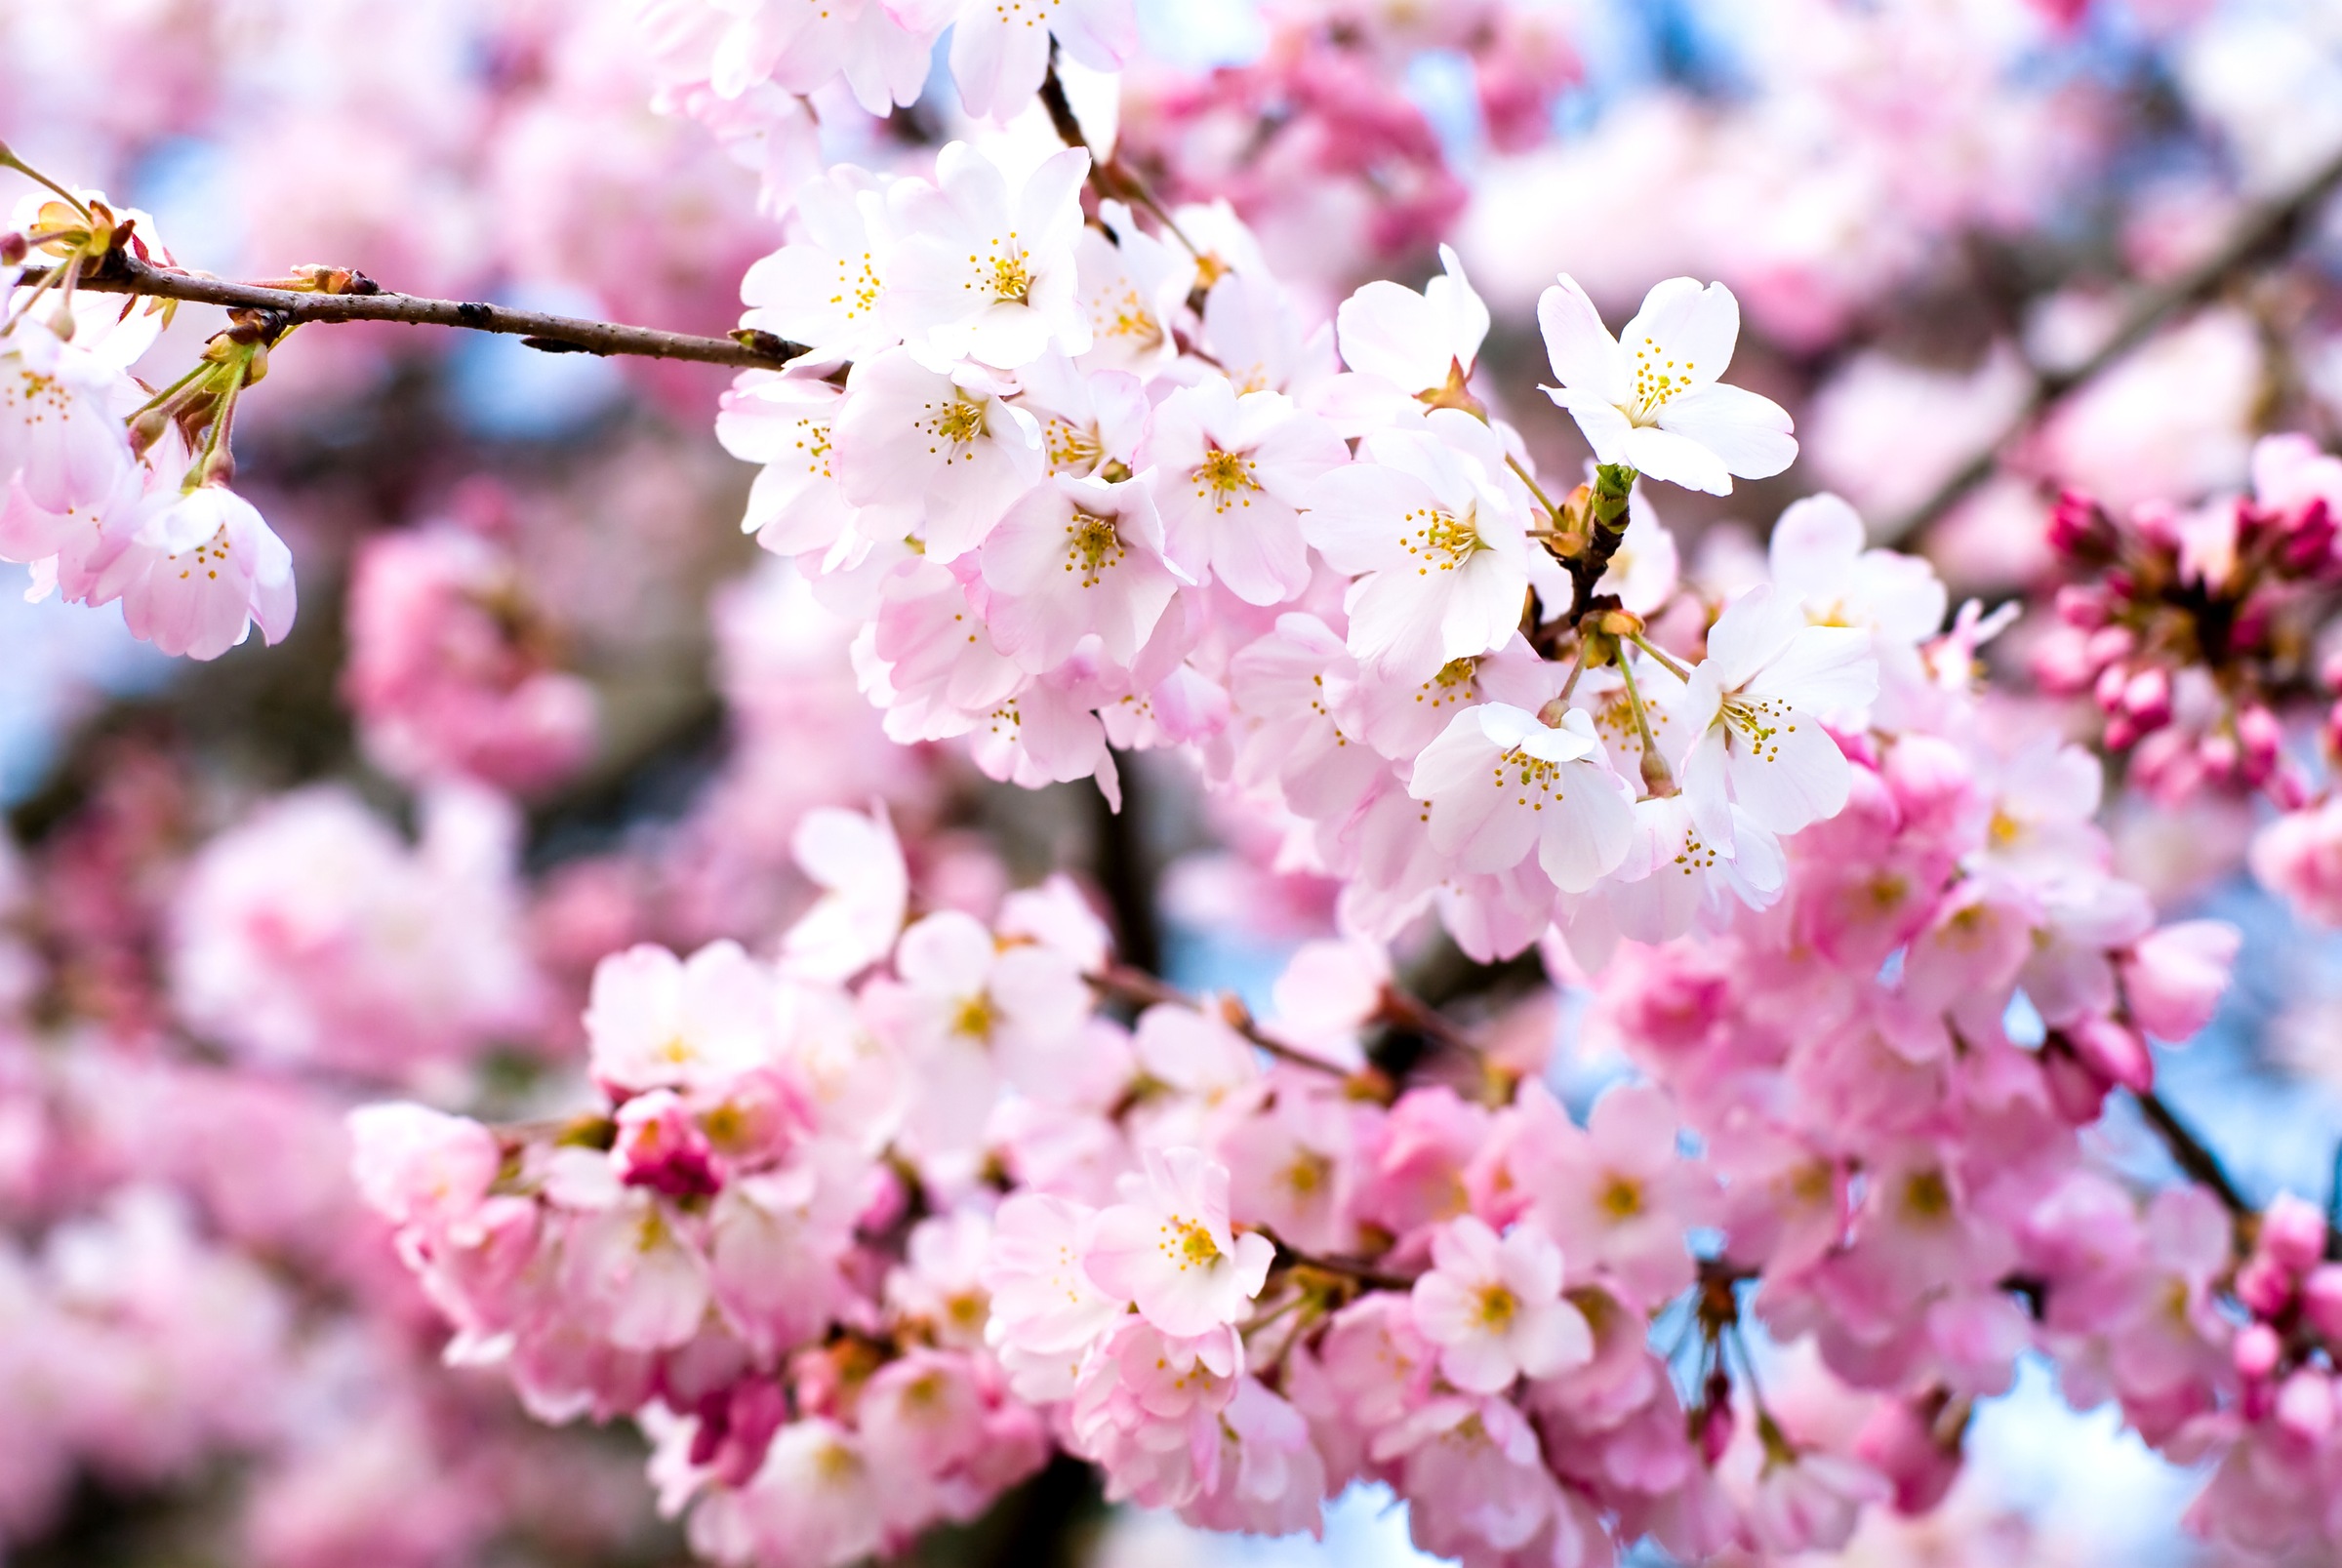 Fototapete »Cherry Blossoms«